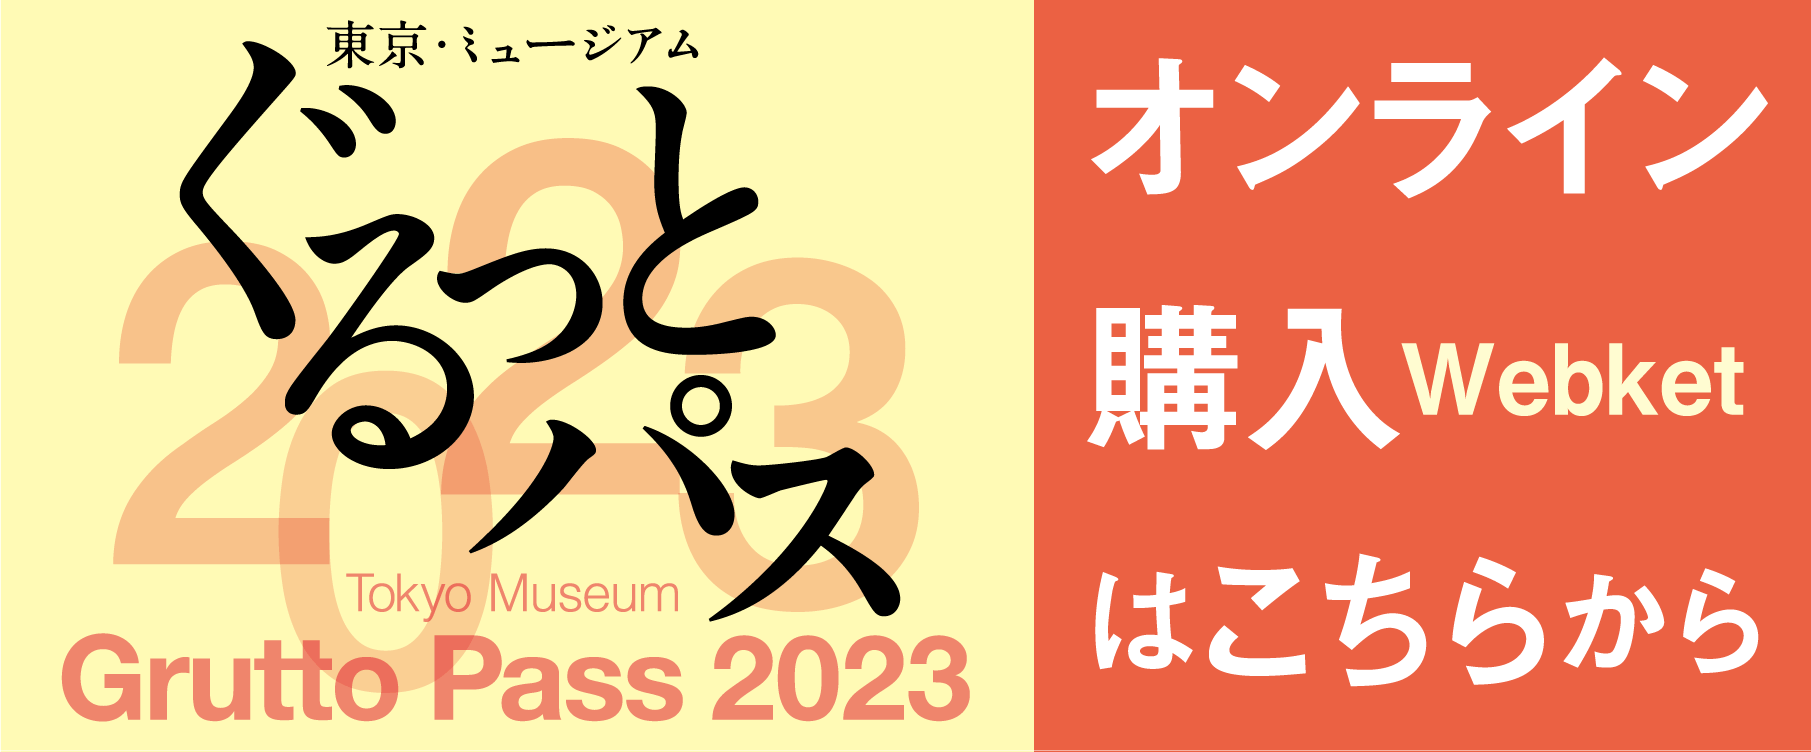 東京・ミュージアム ぐるっとパス 2023 オンライン購入はこちらから